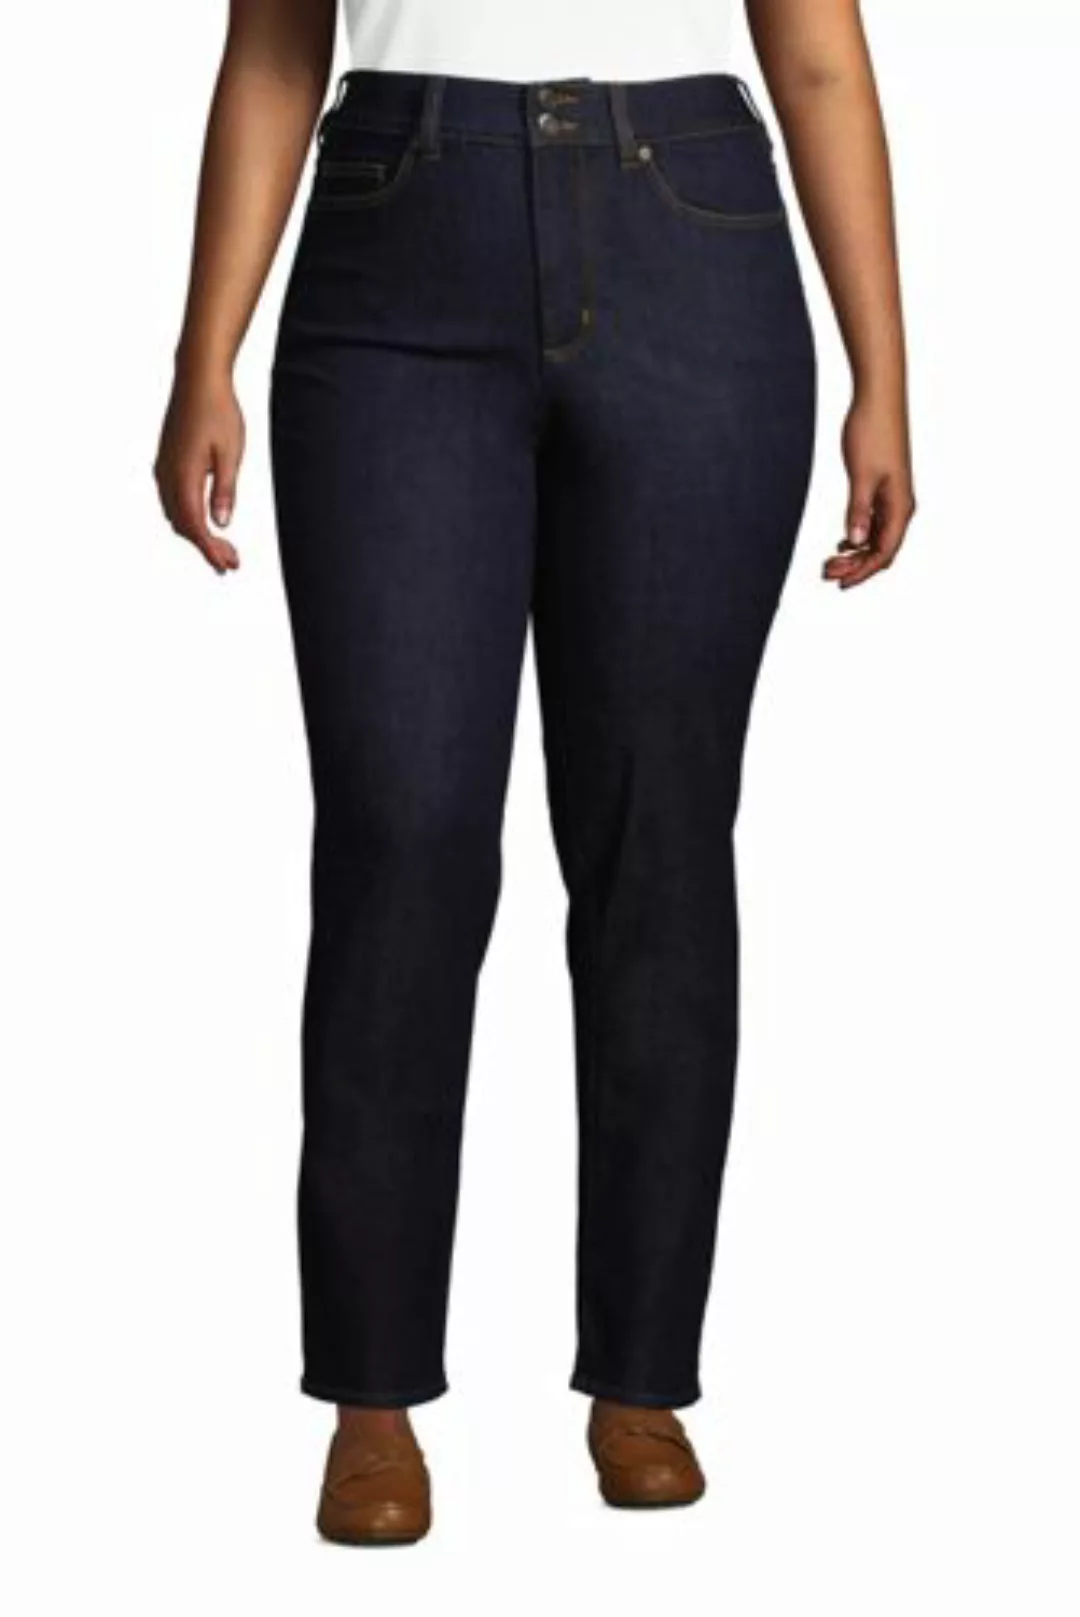 Shaping Jeans Straight Fit High Waist in großen Größen, Damen, Größe: 50 30 günstig online kaufen